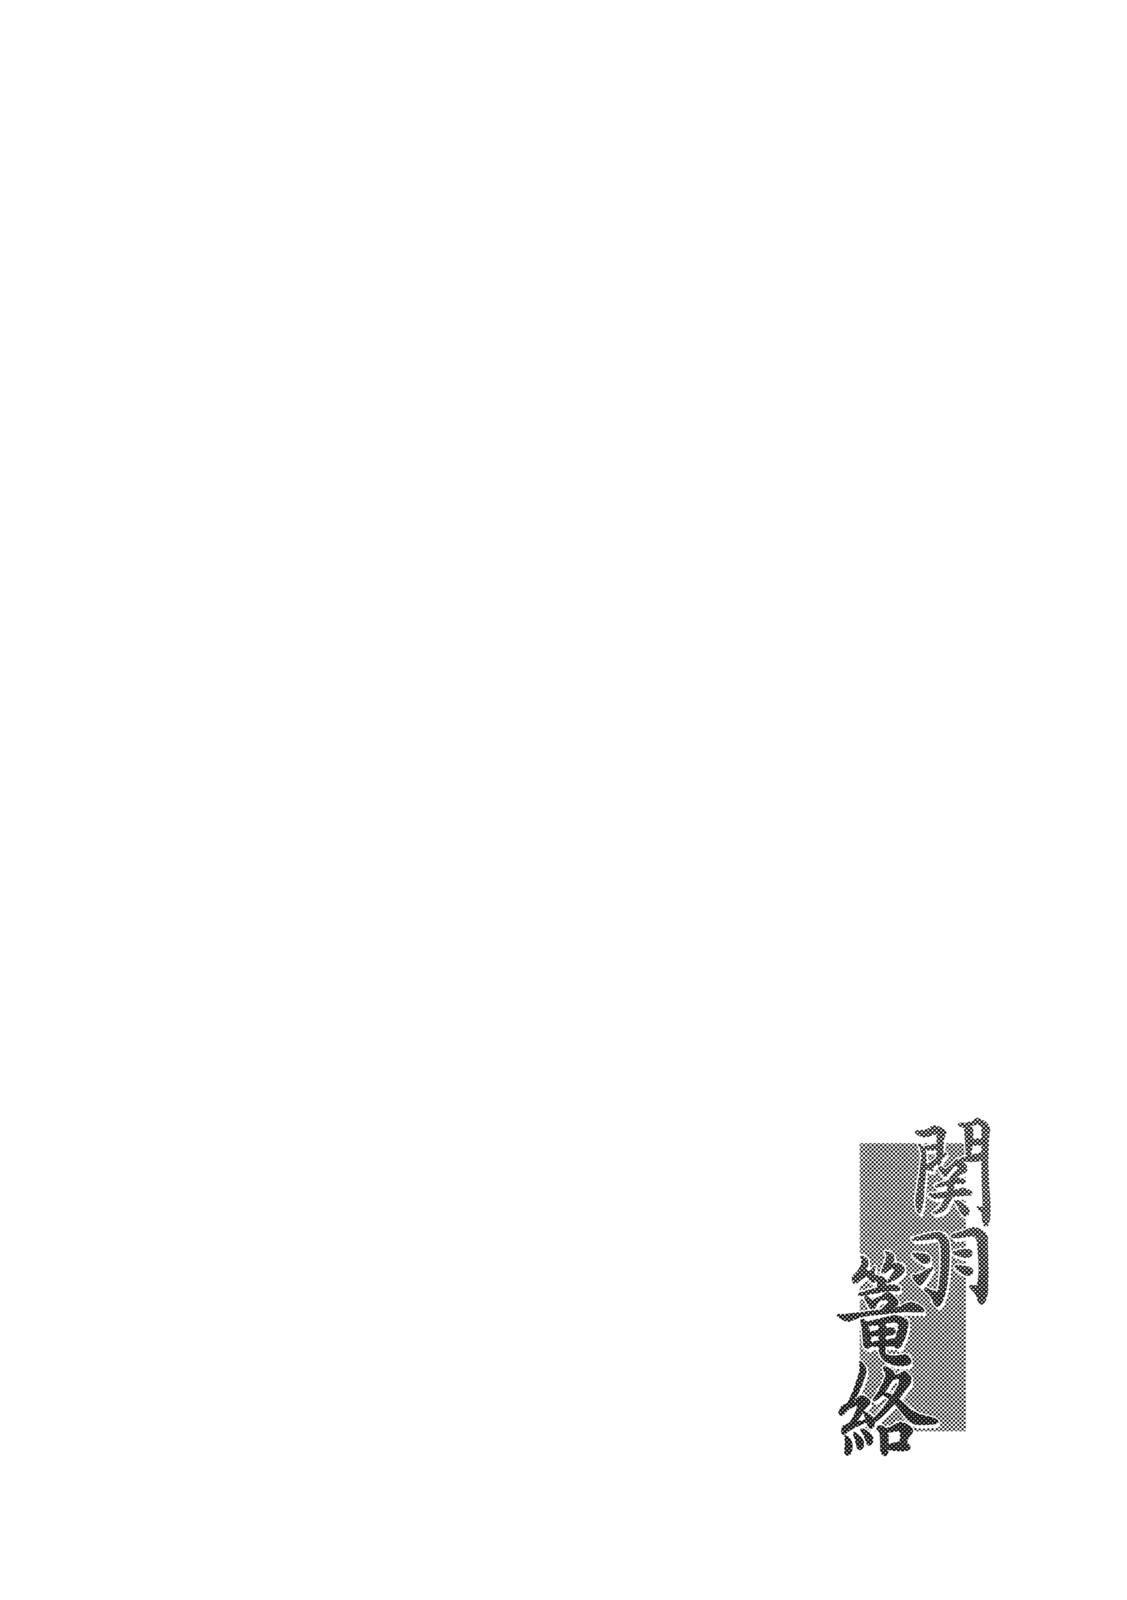 Tugging Kanu Rouraku - Ikkitousen Webcamchat - Page 3